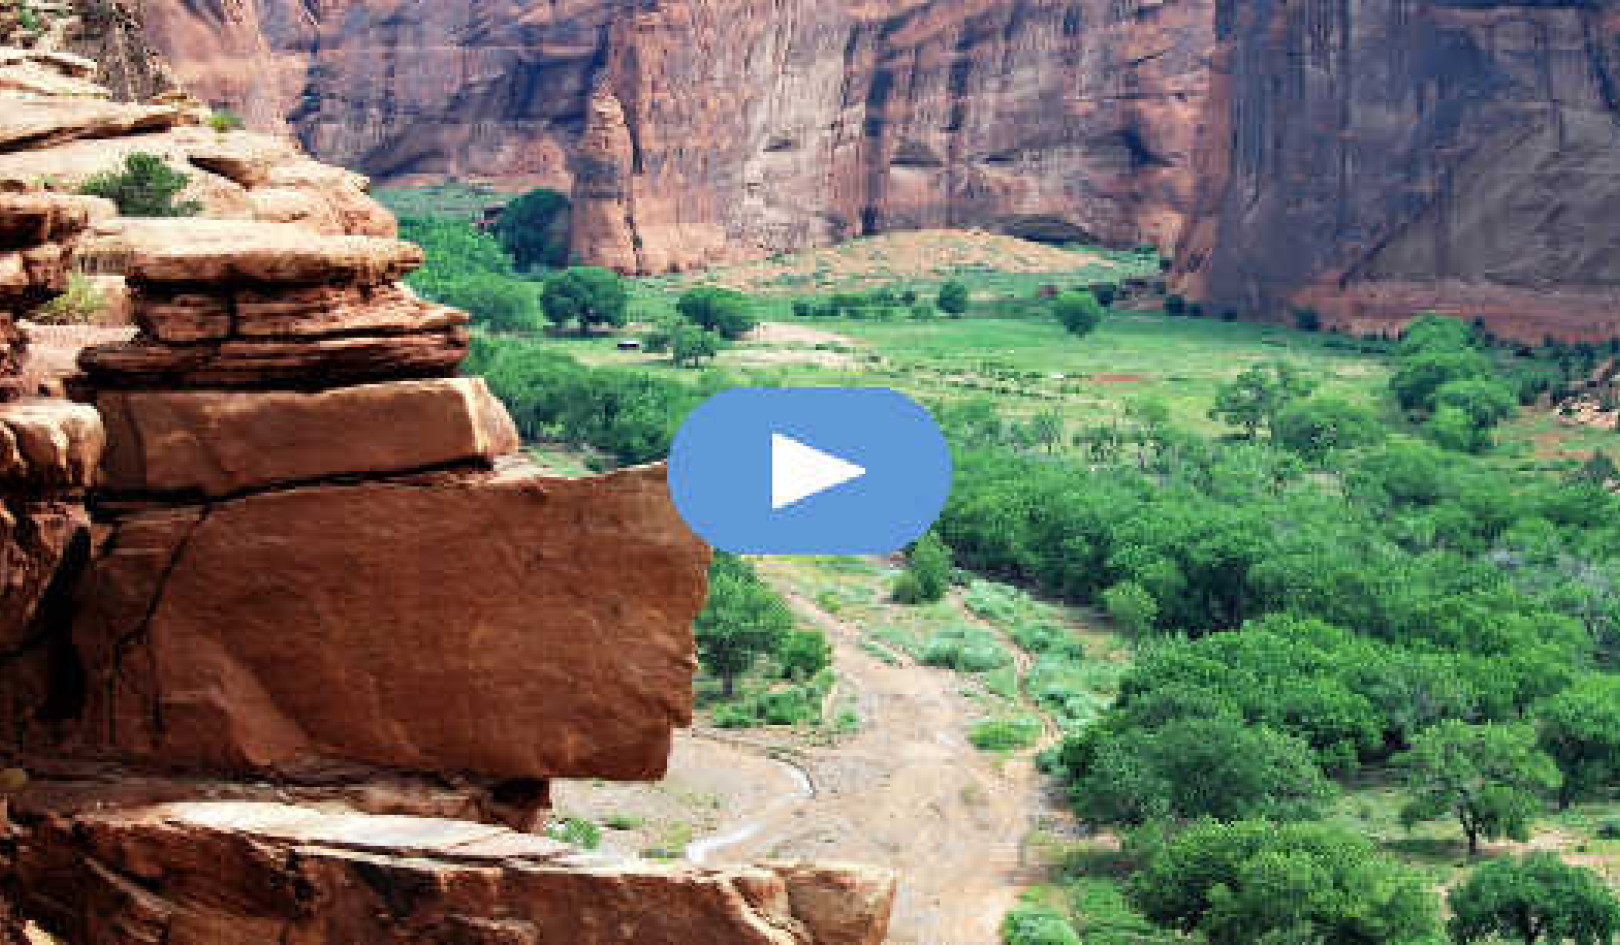 Mon expérience Mountain Lion dans le Canyon de Chelly : cauchemar ou guide spirituel ? (Vidéo)